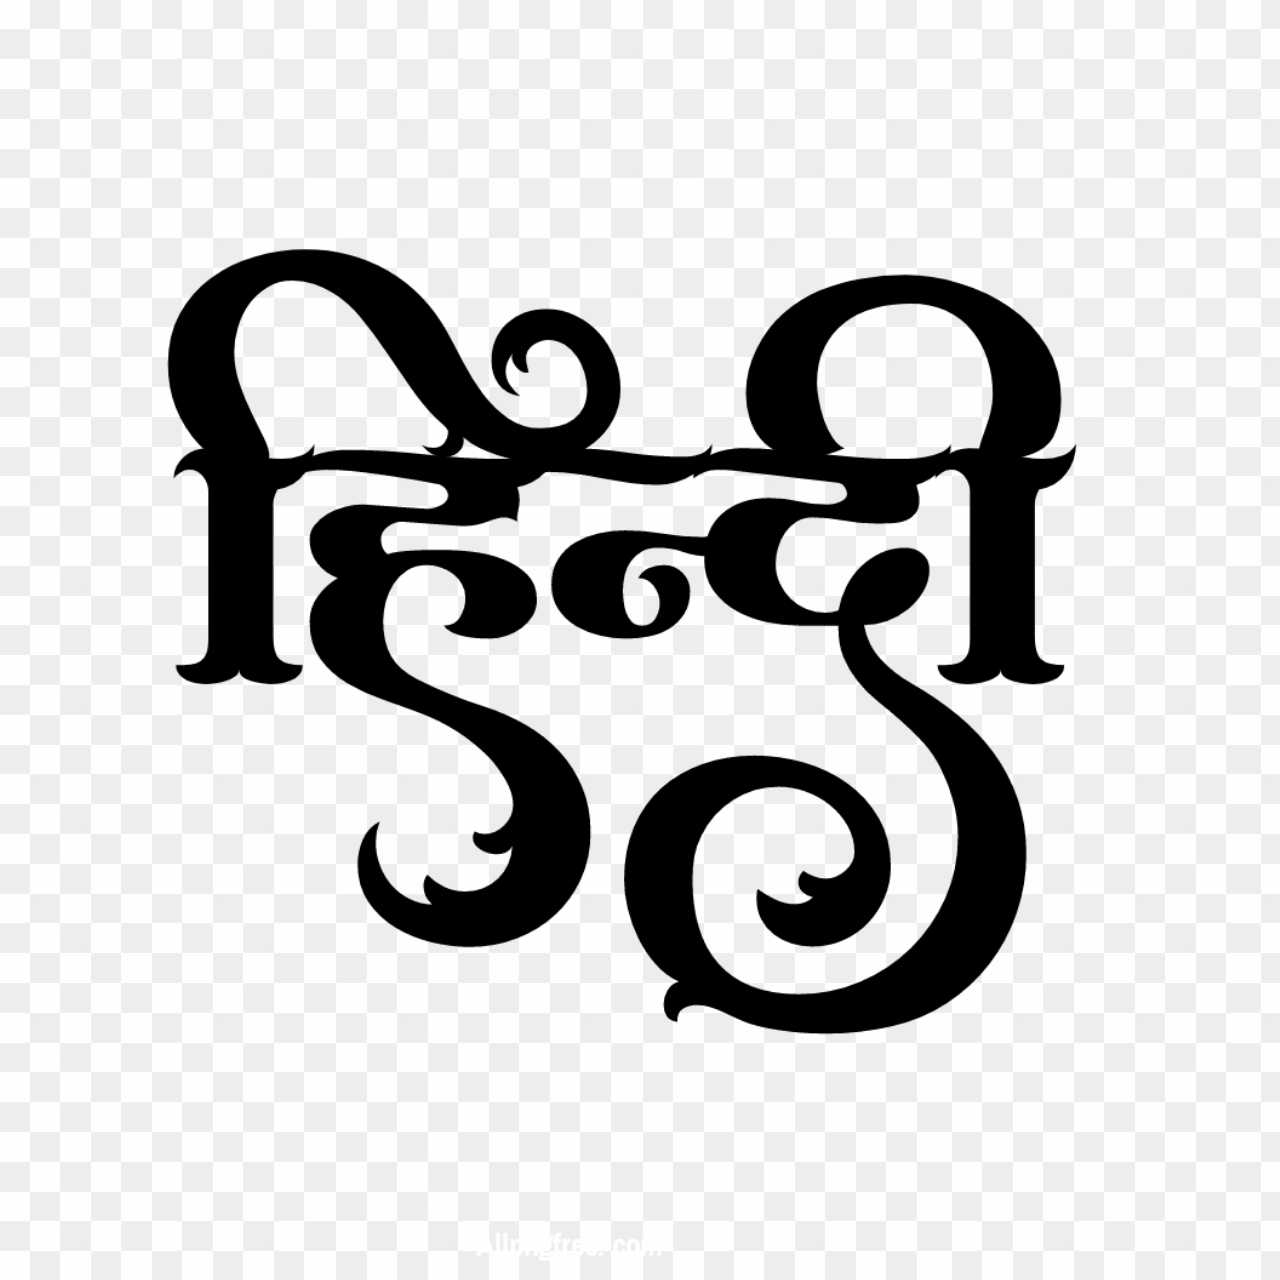 Hindi text PNG images